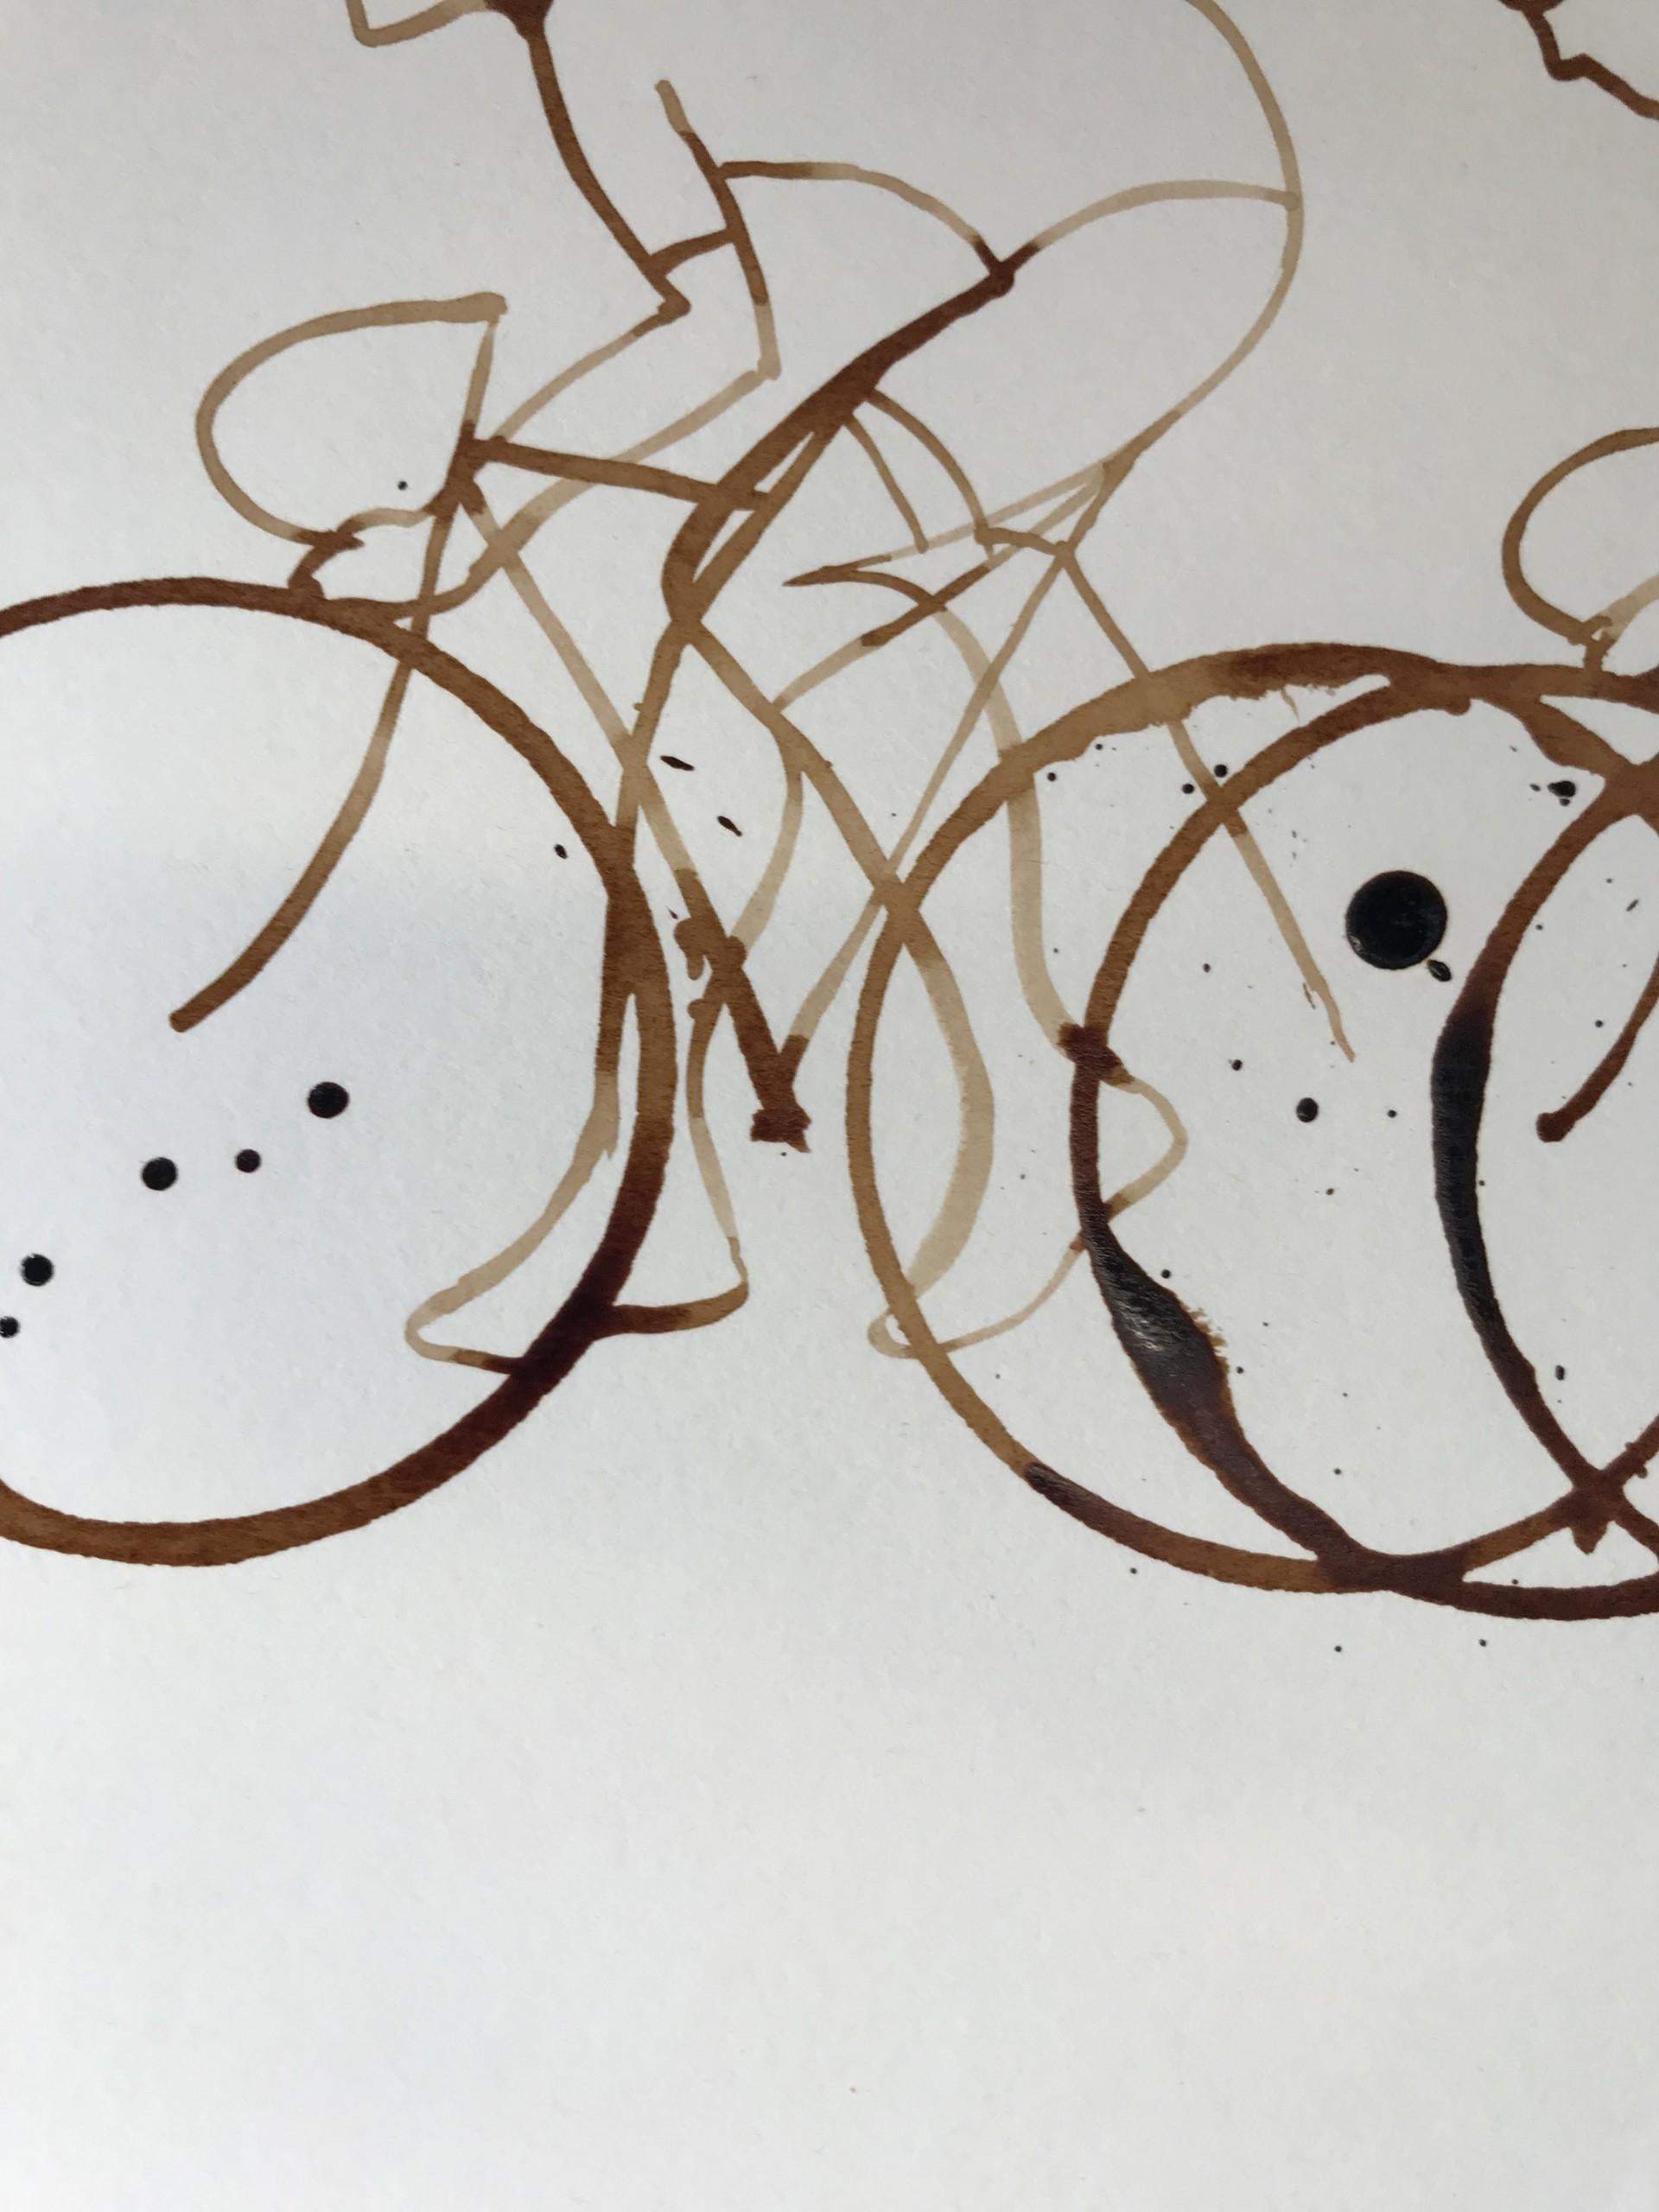 Coffee Peloton XXXV ist eine Original-Kaffeezeichnung der Künstlerin Eliza Southwood auf Papier. Dieser Beitrag ist Teil von Elizas Kaffee-Peloton-Serie, die die Liebe zum Radfahren mit der Liebe zu einer guten Kaffeepause verbindet.
Eliza Southwood